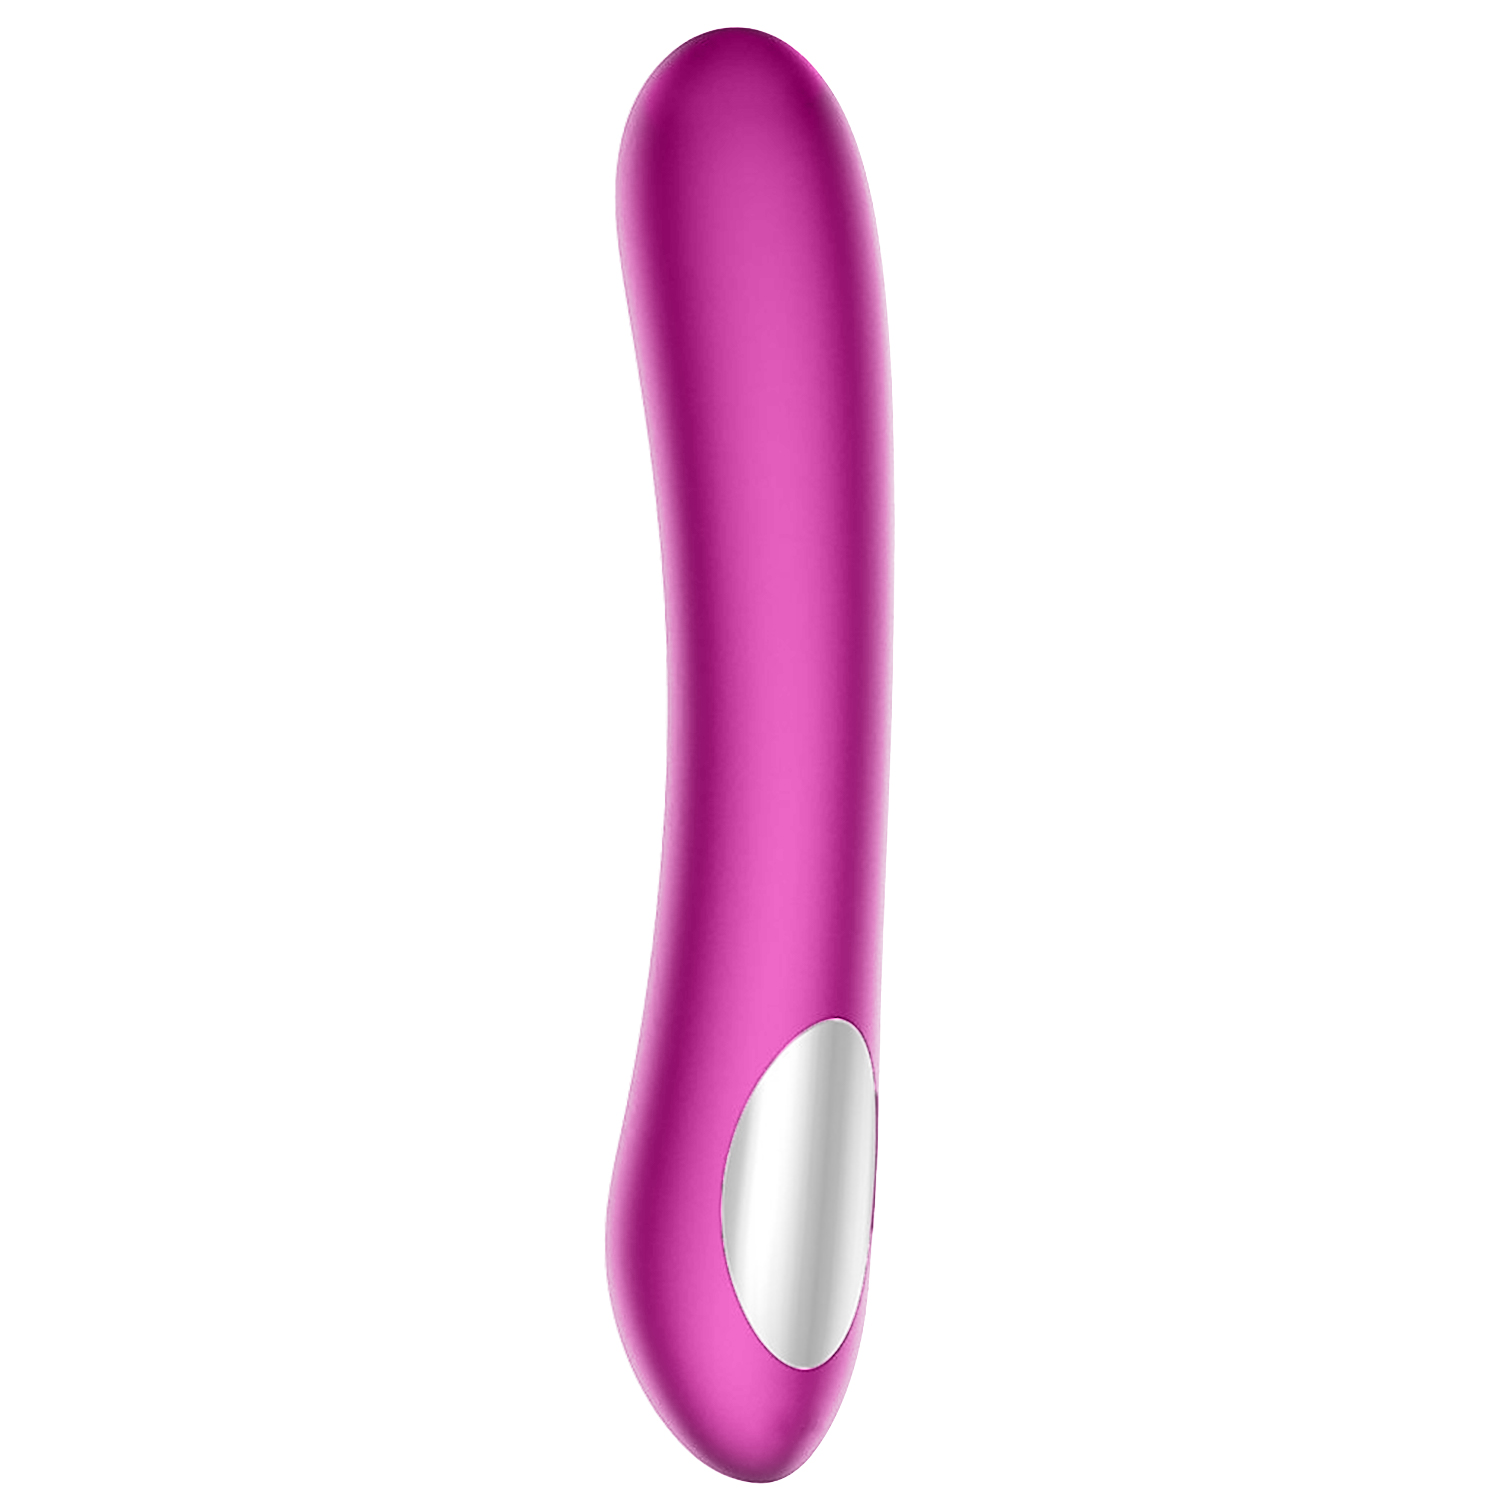 Kiiroo Pearl 2 Teledildonic Dildo Vibrator-Purple thumbnail